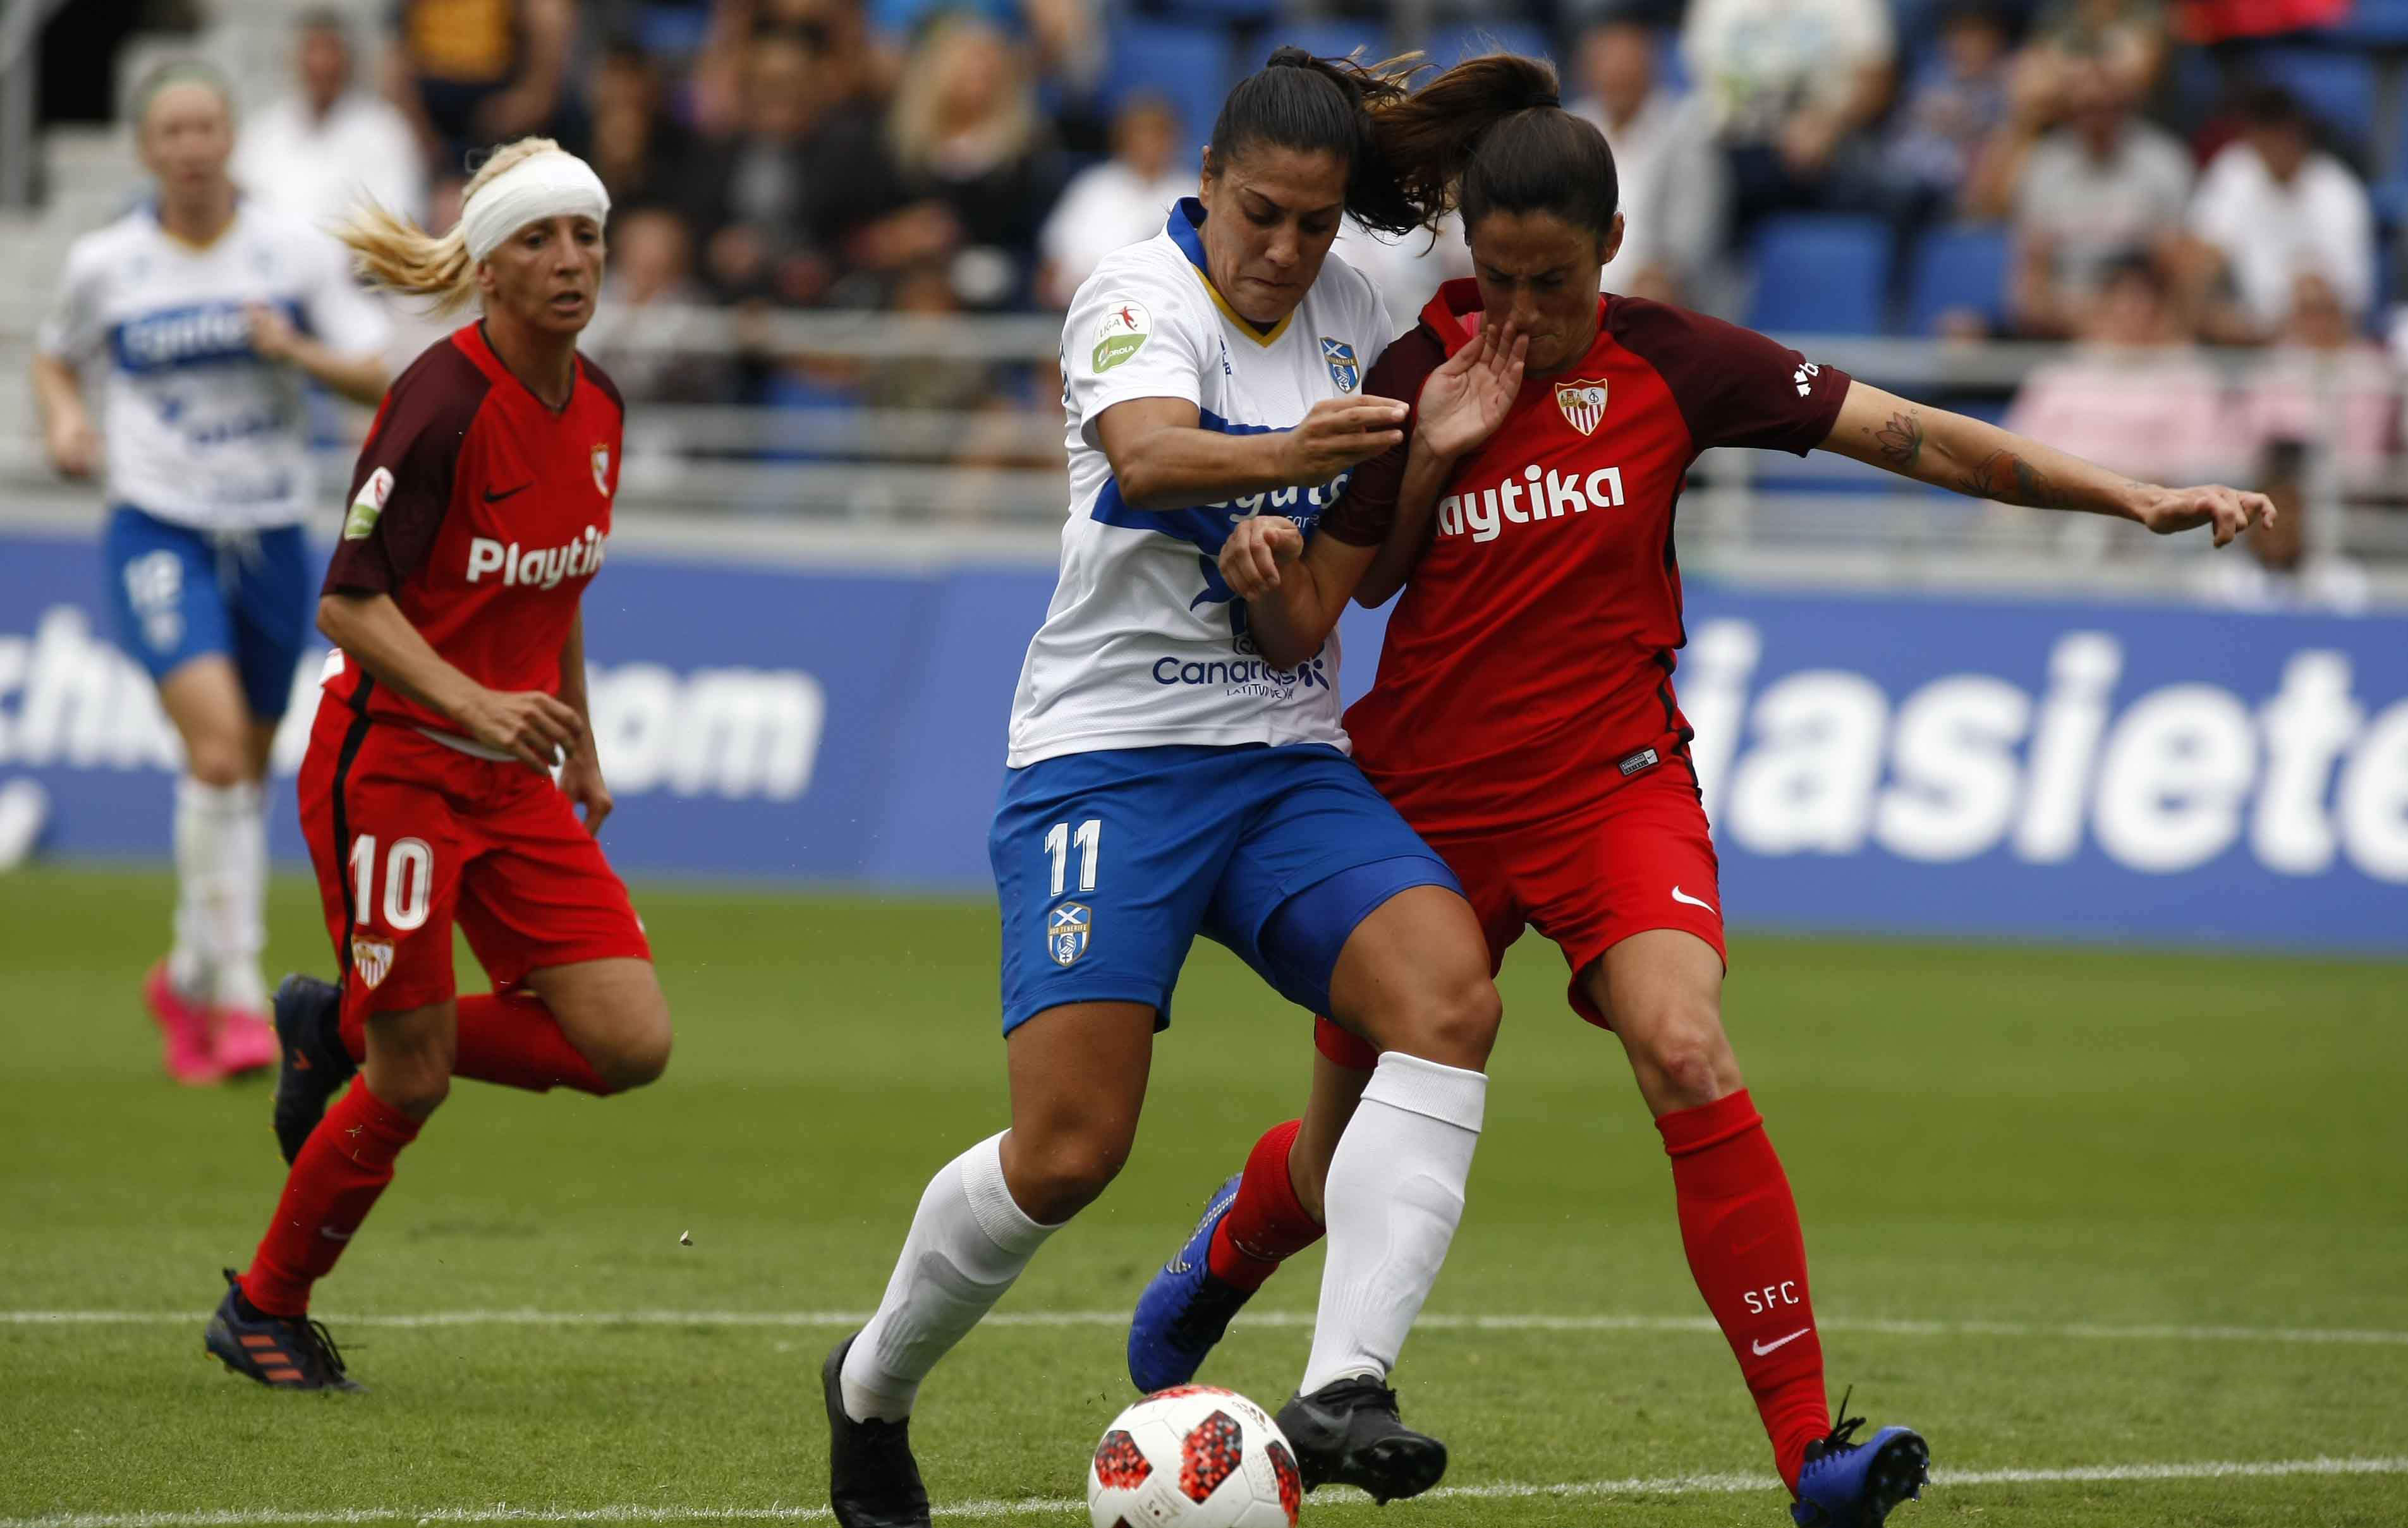 Maite Albarrán, una de las capitanas del primer equipo femenino del Sevilla FC, pugna por el balón con Cristina Martín-Prieto, exjugadora sevillista y actual de la UDG Tenerife, en el encuentro de la primera vuelta